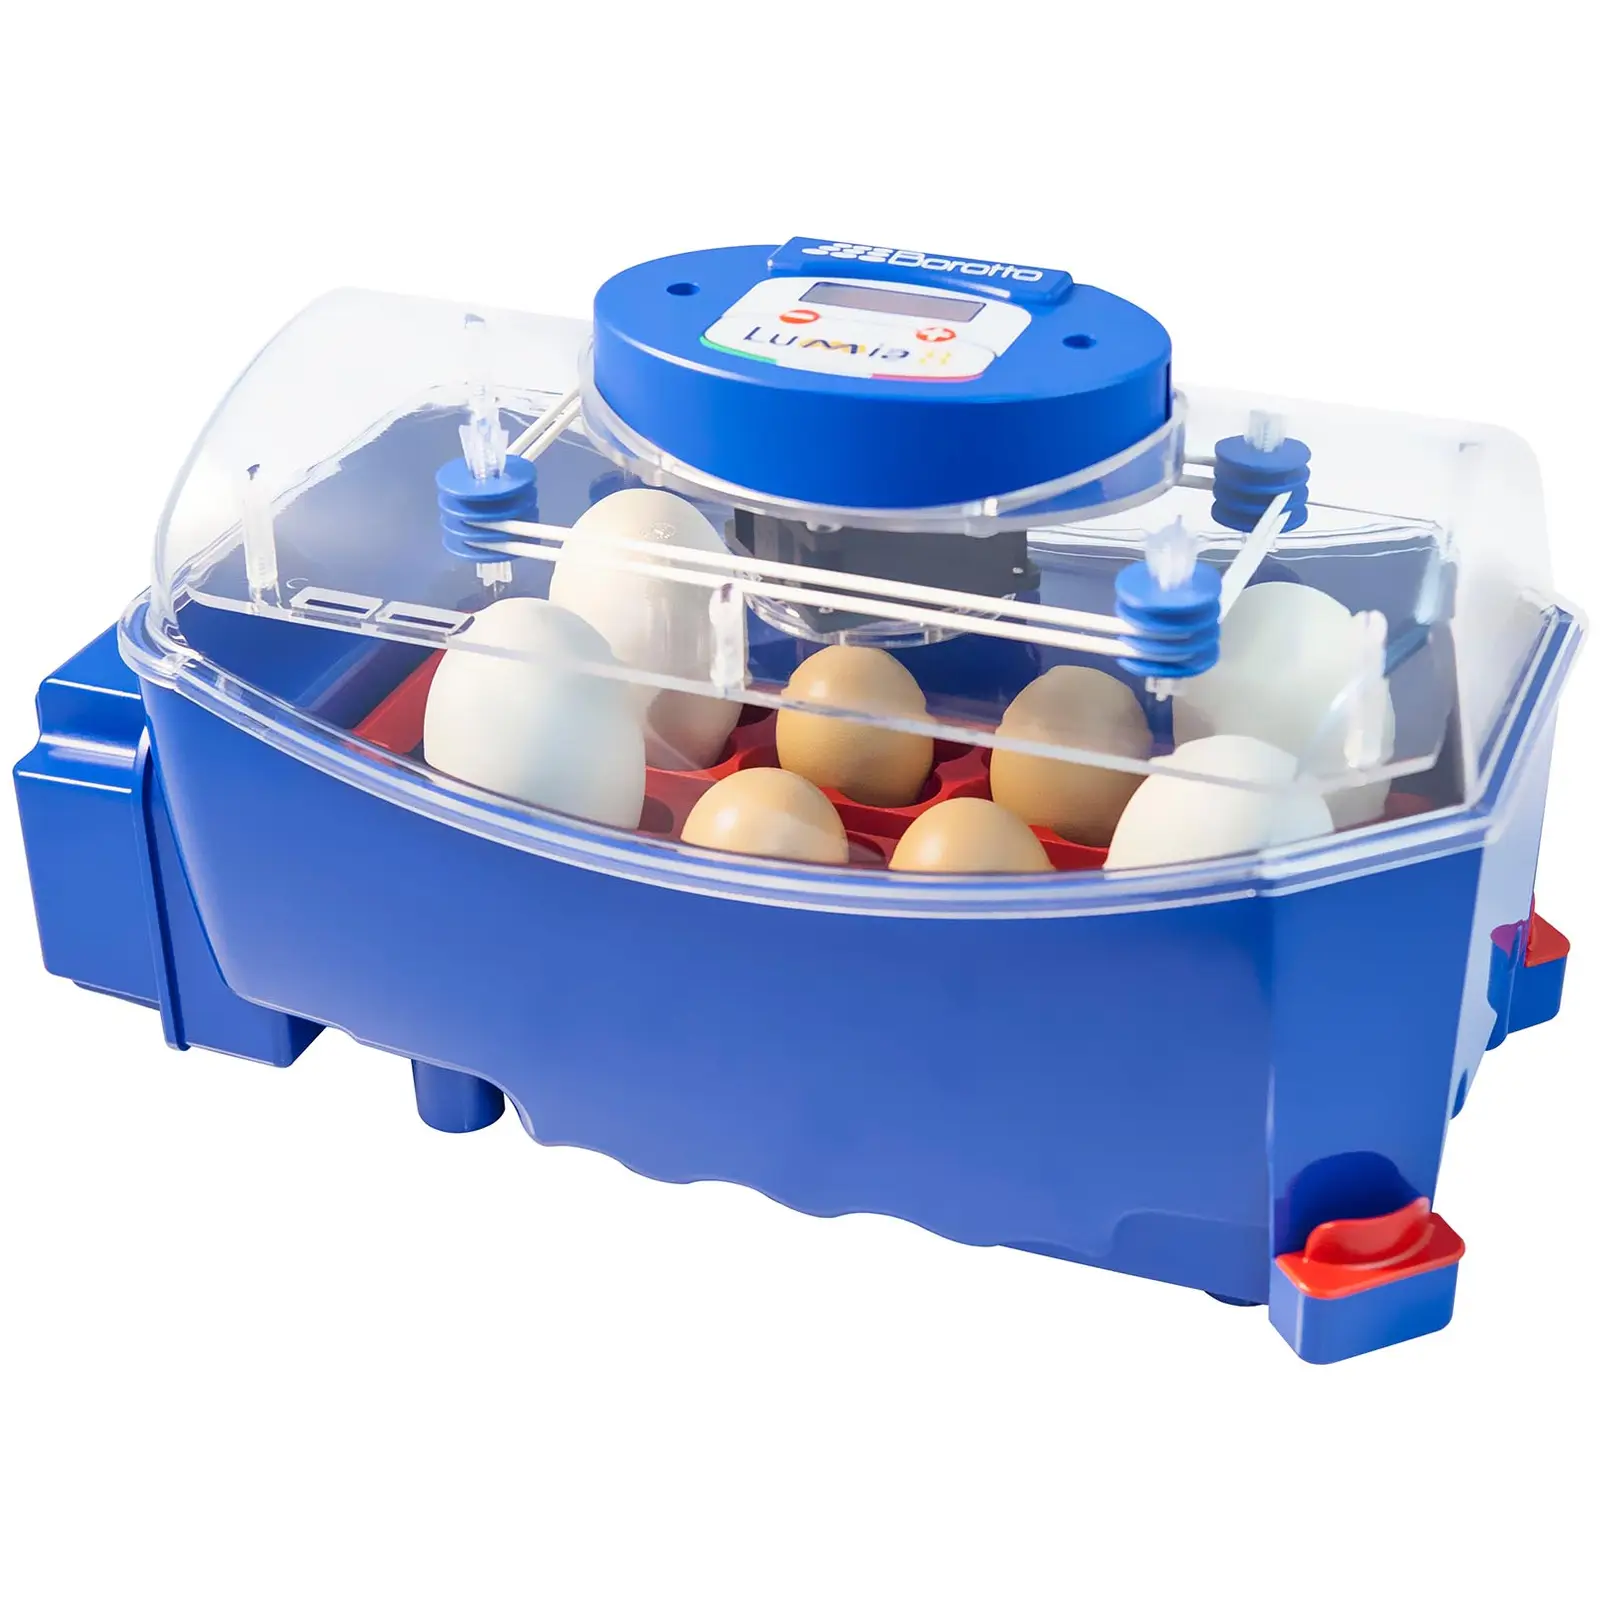 Incubator - 8 eggs - fully automatic